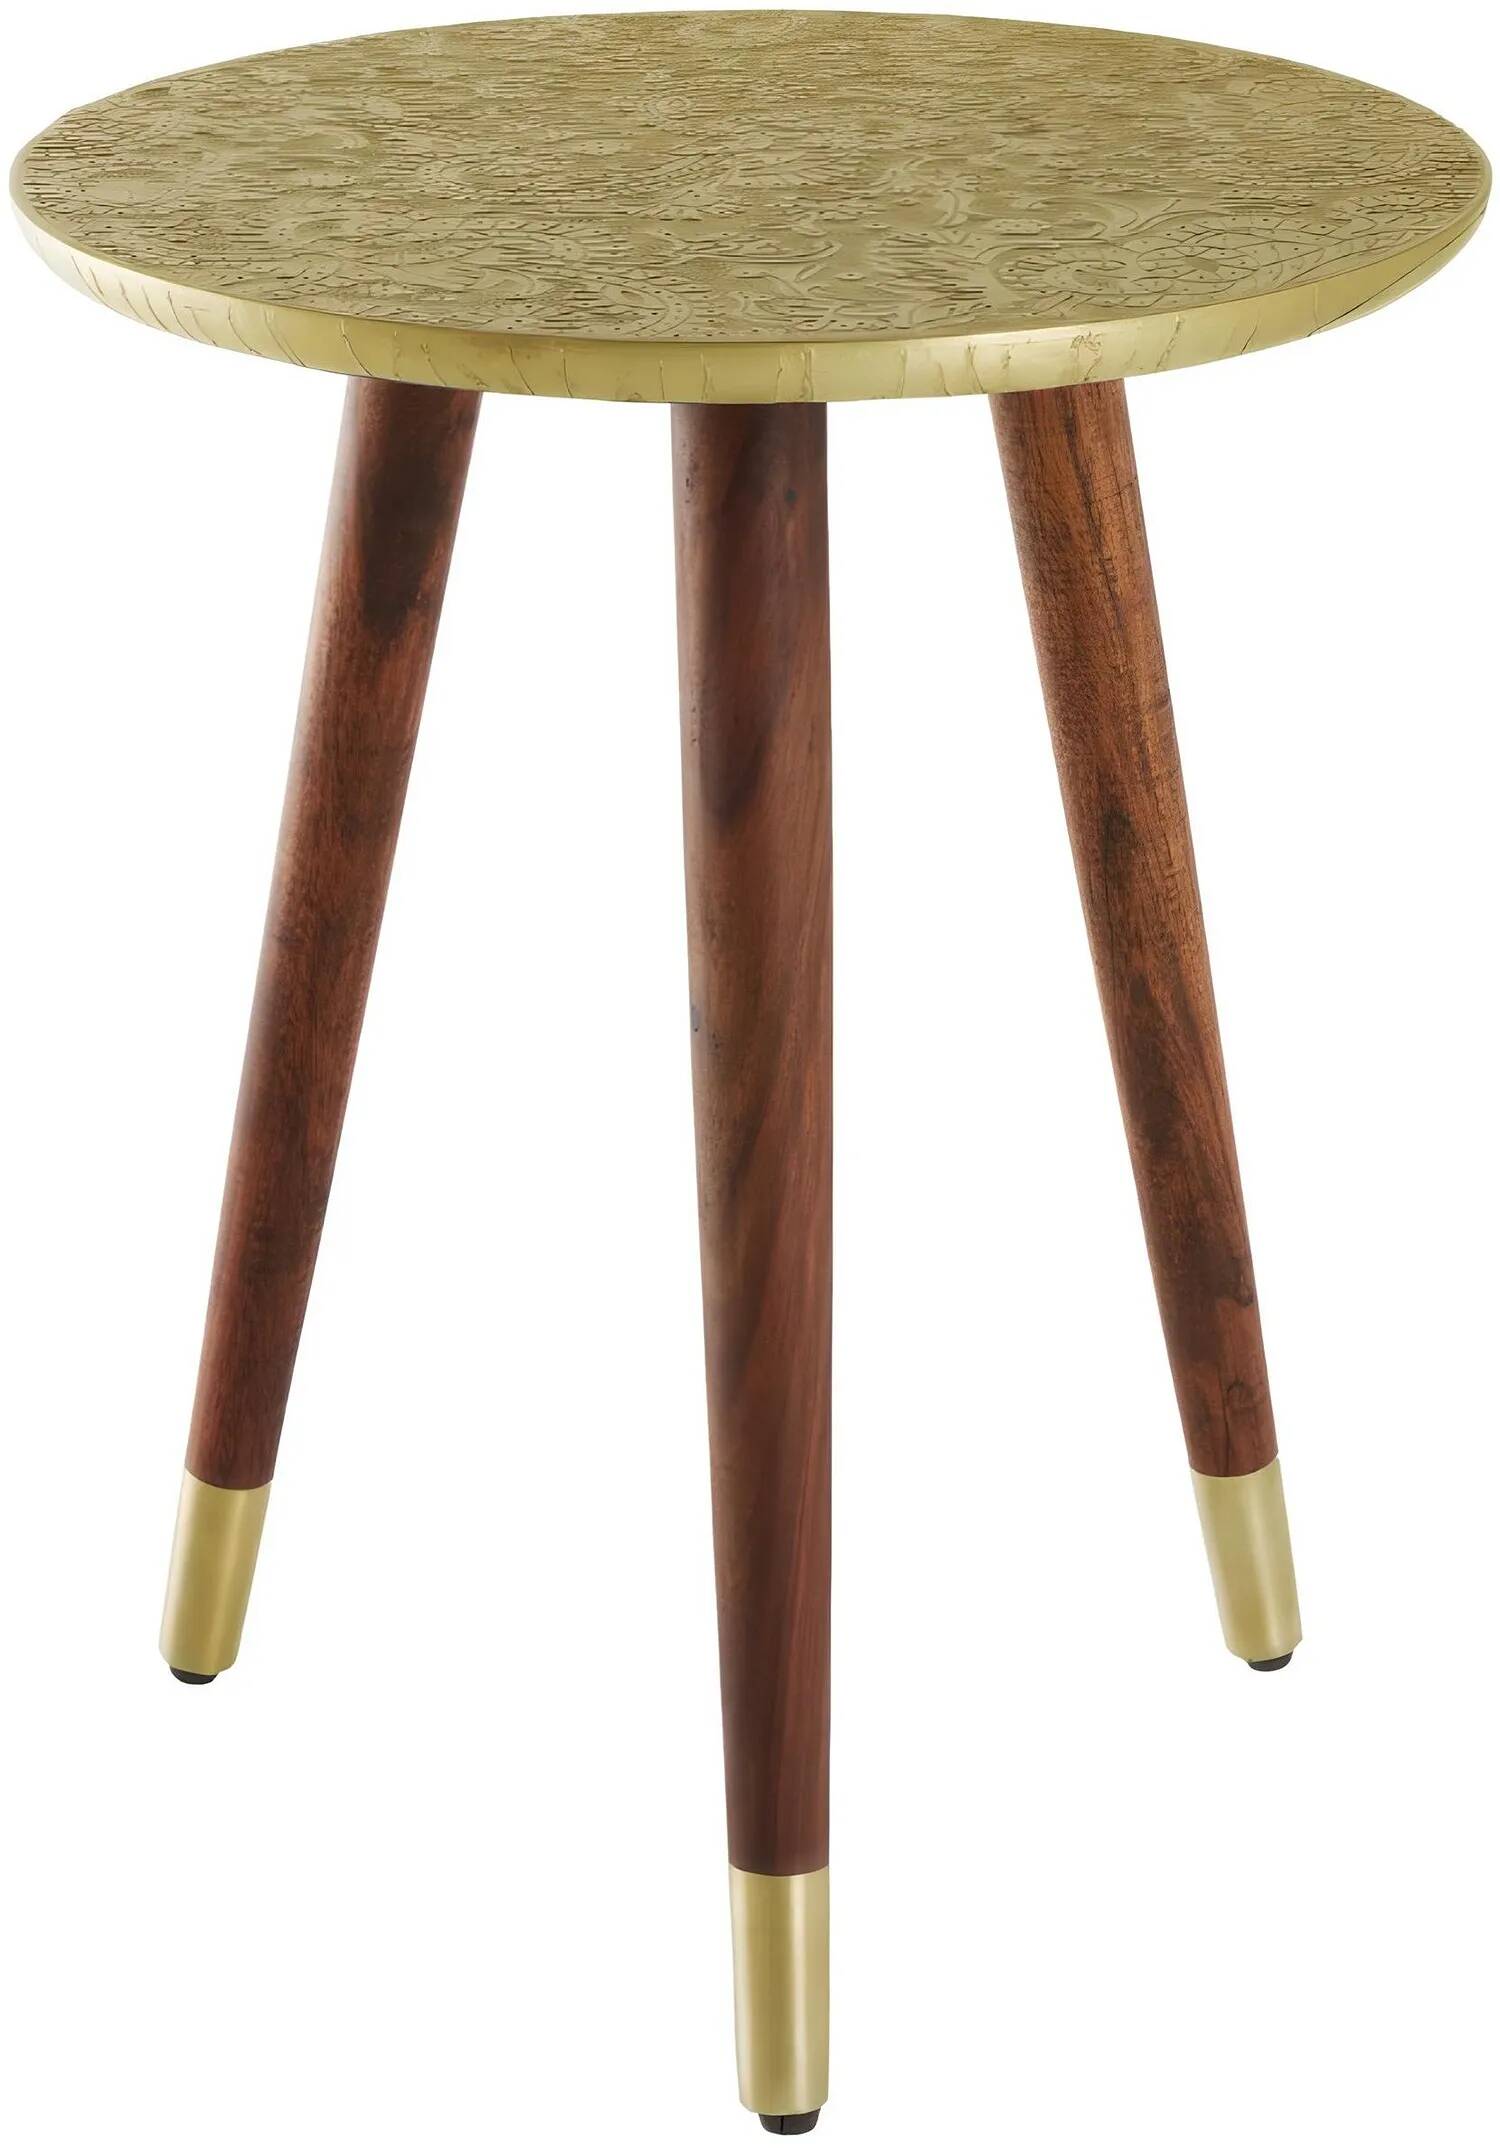 Table d'appoint en bois massif d'acacia marron et métal or antique